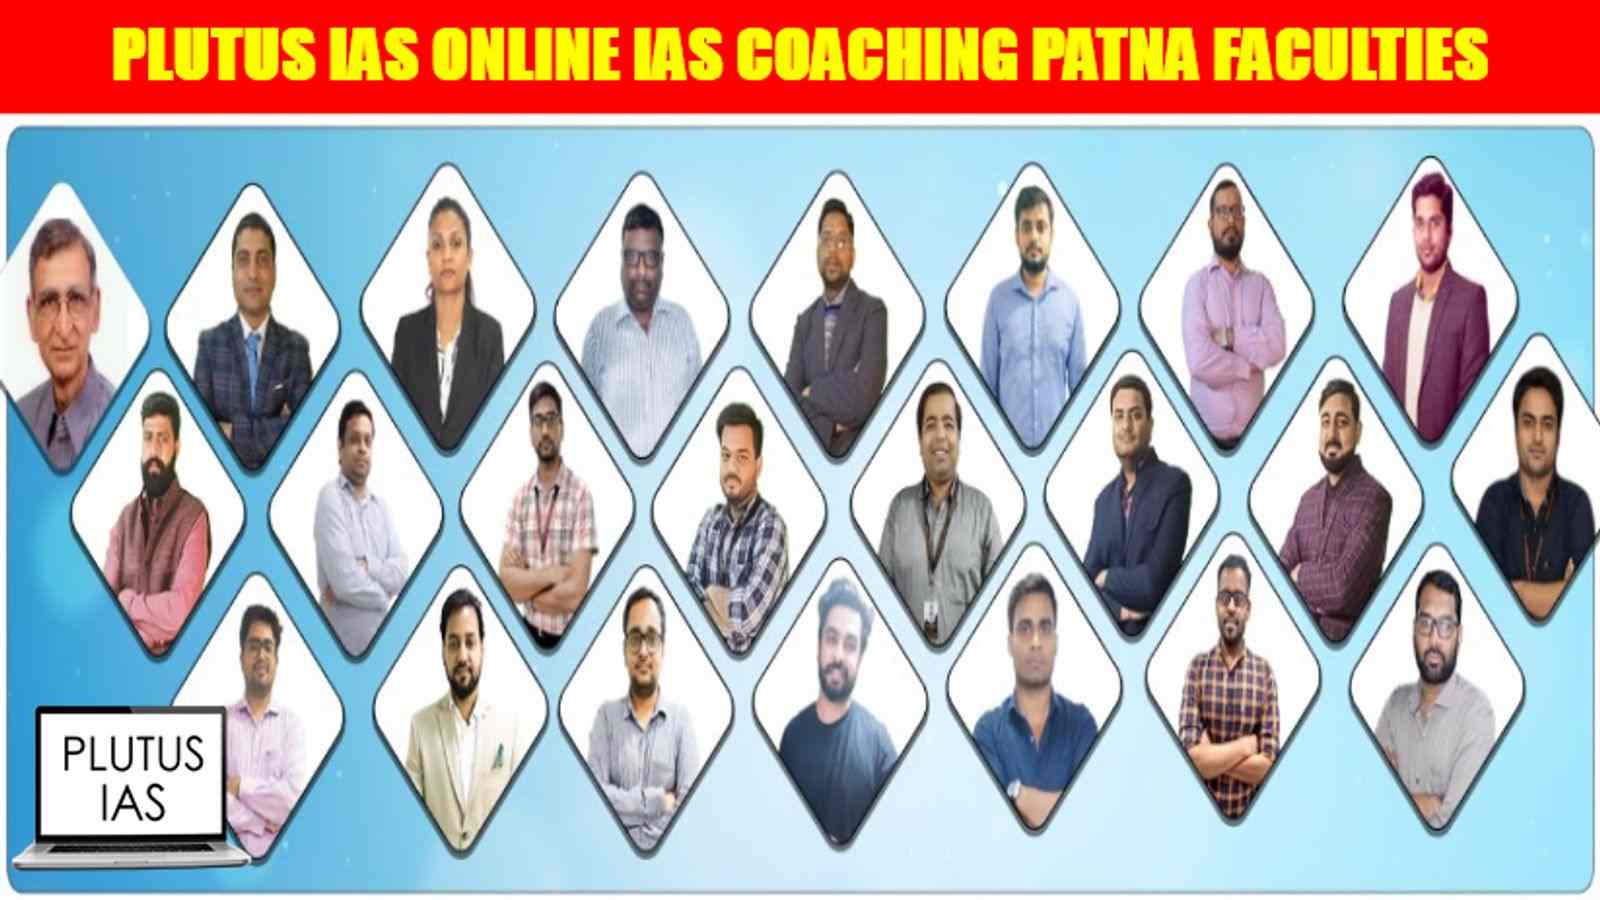 Plutus IAS Online Coaching Patna Faculties